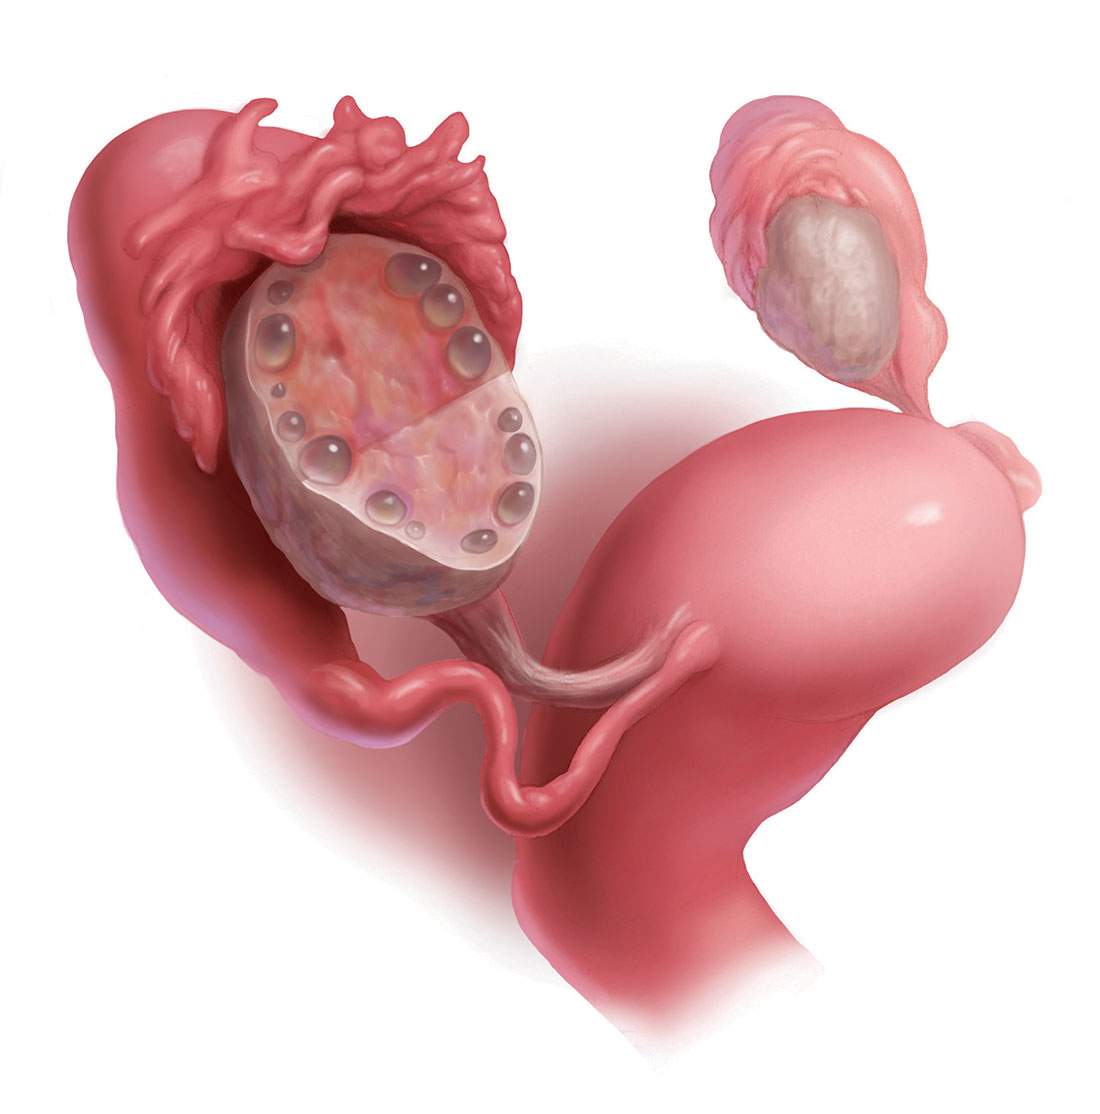 Pierderea în greutate cu sindromul ovarului polichistic (PCOS) # 1 joc de frumusețe